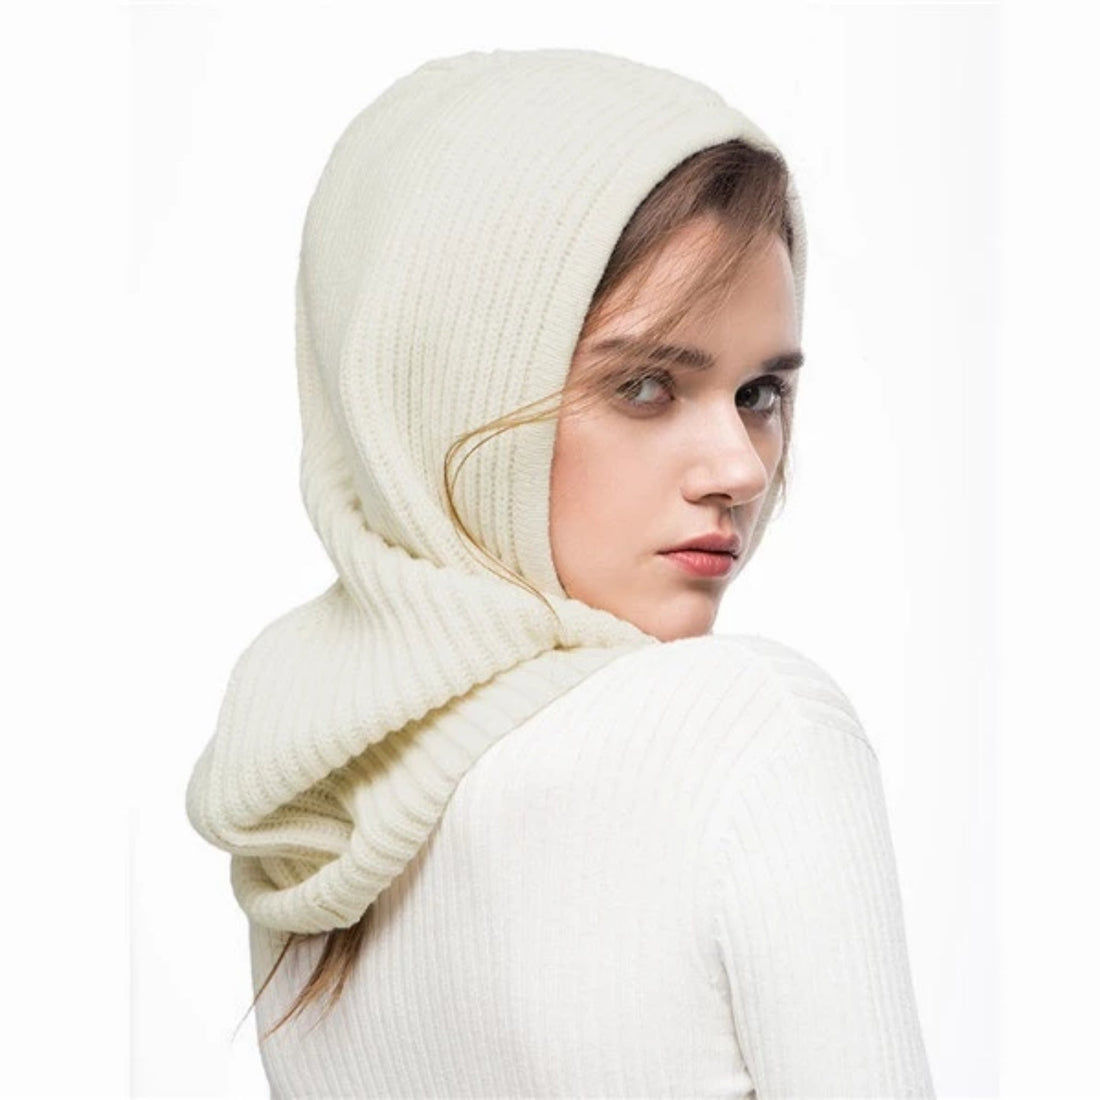 Women's Winter Wool Knitted Hat